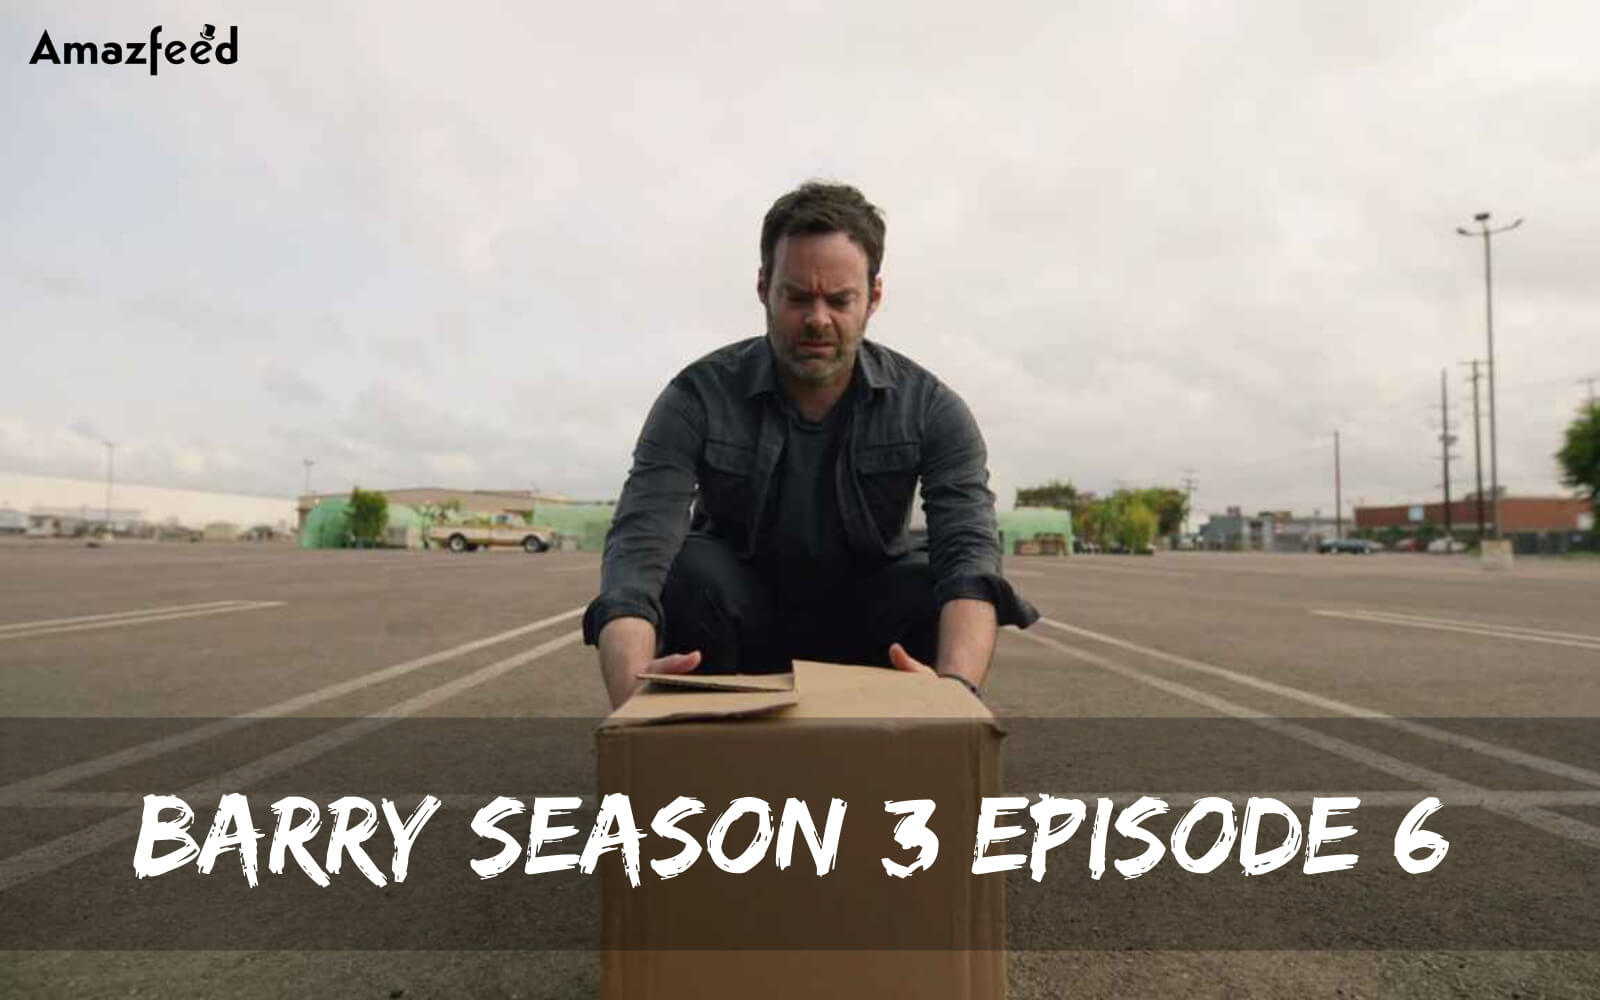 Barry Season 3 Episode 6 release date